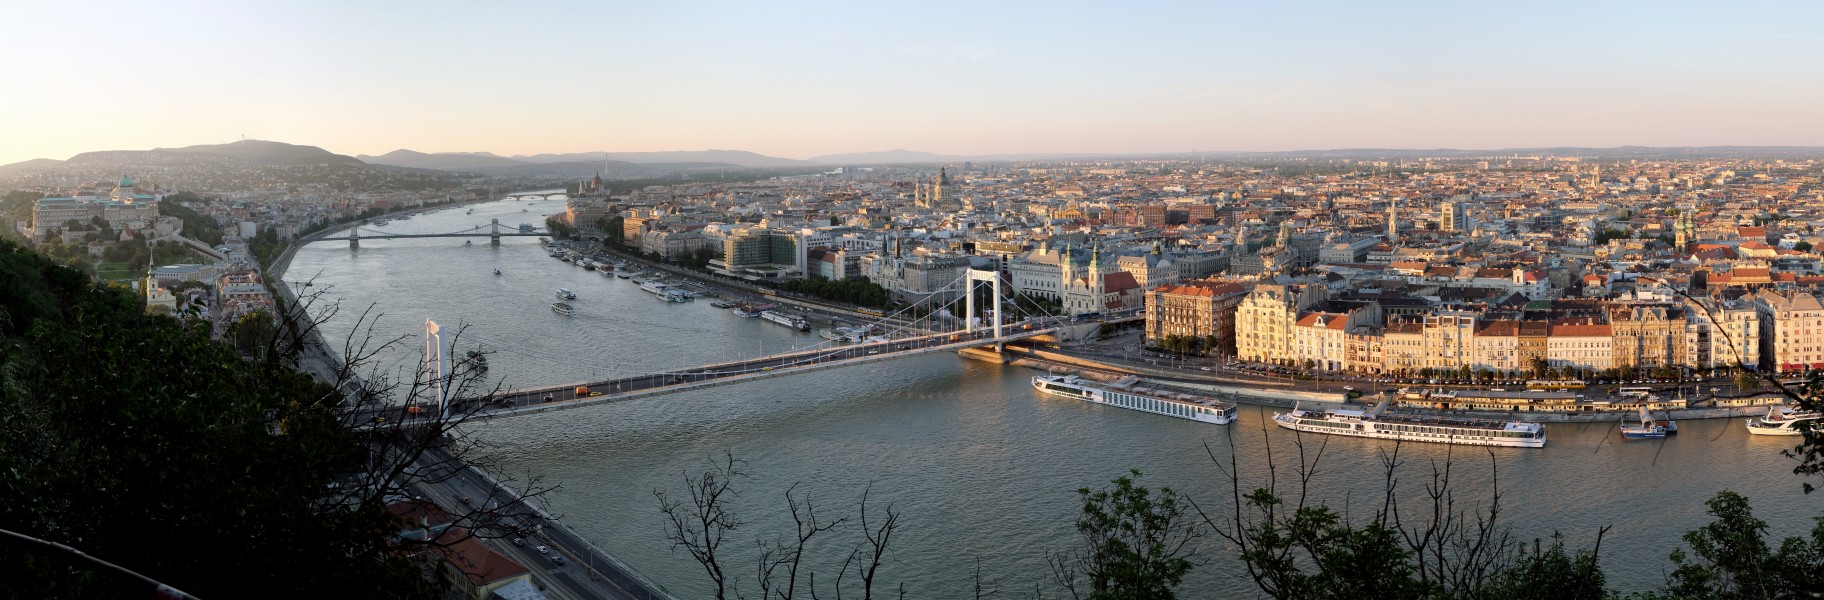 Budapest Evening Panorama from Gellert Hill